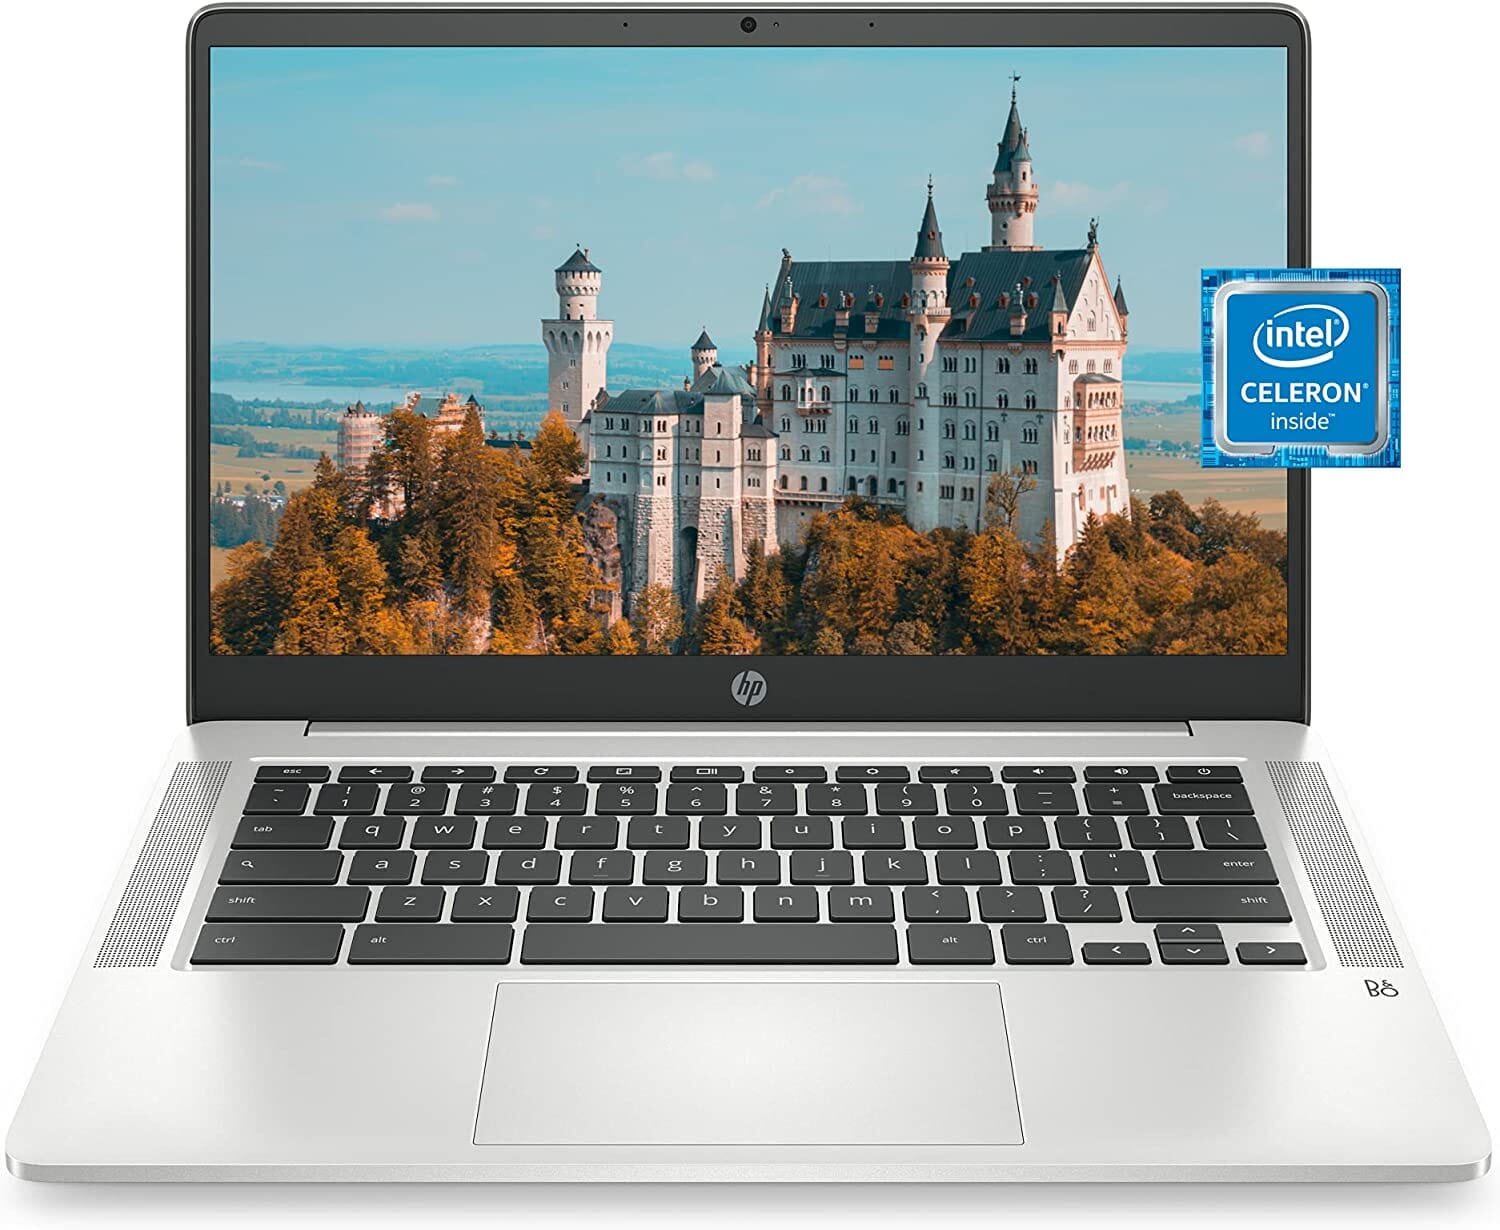 
HP Chromebook 14 Laptop, Intel Celeron N4020